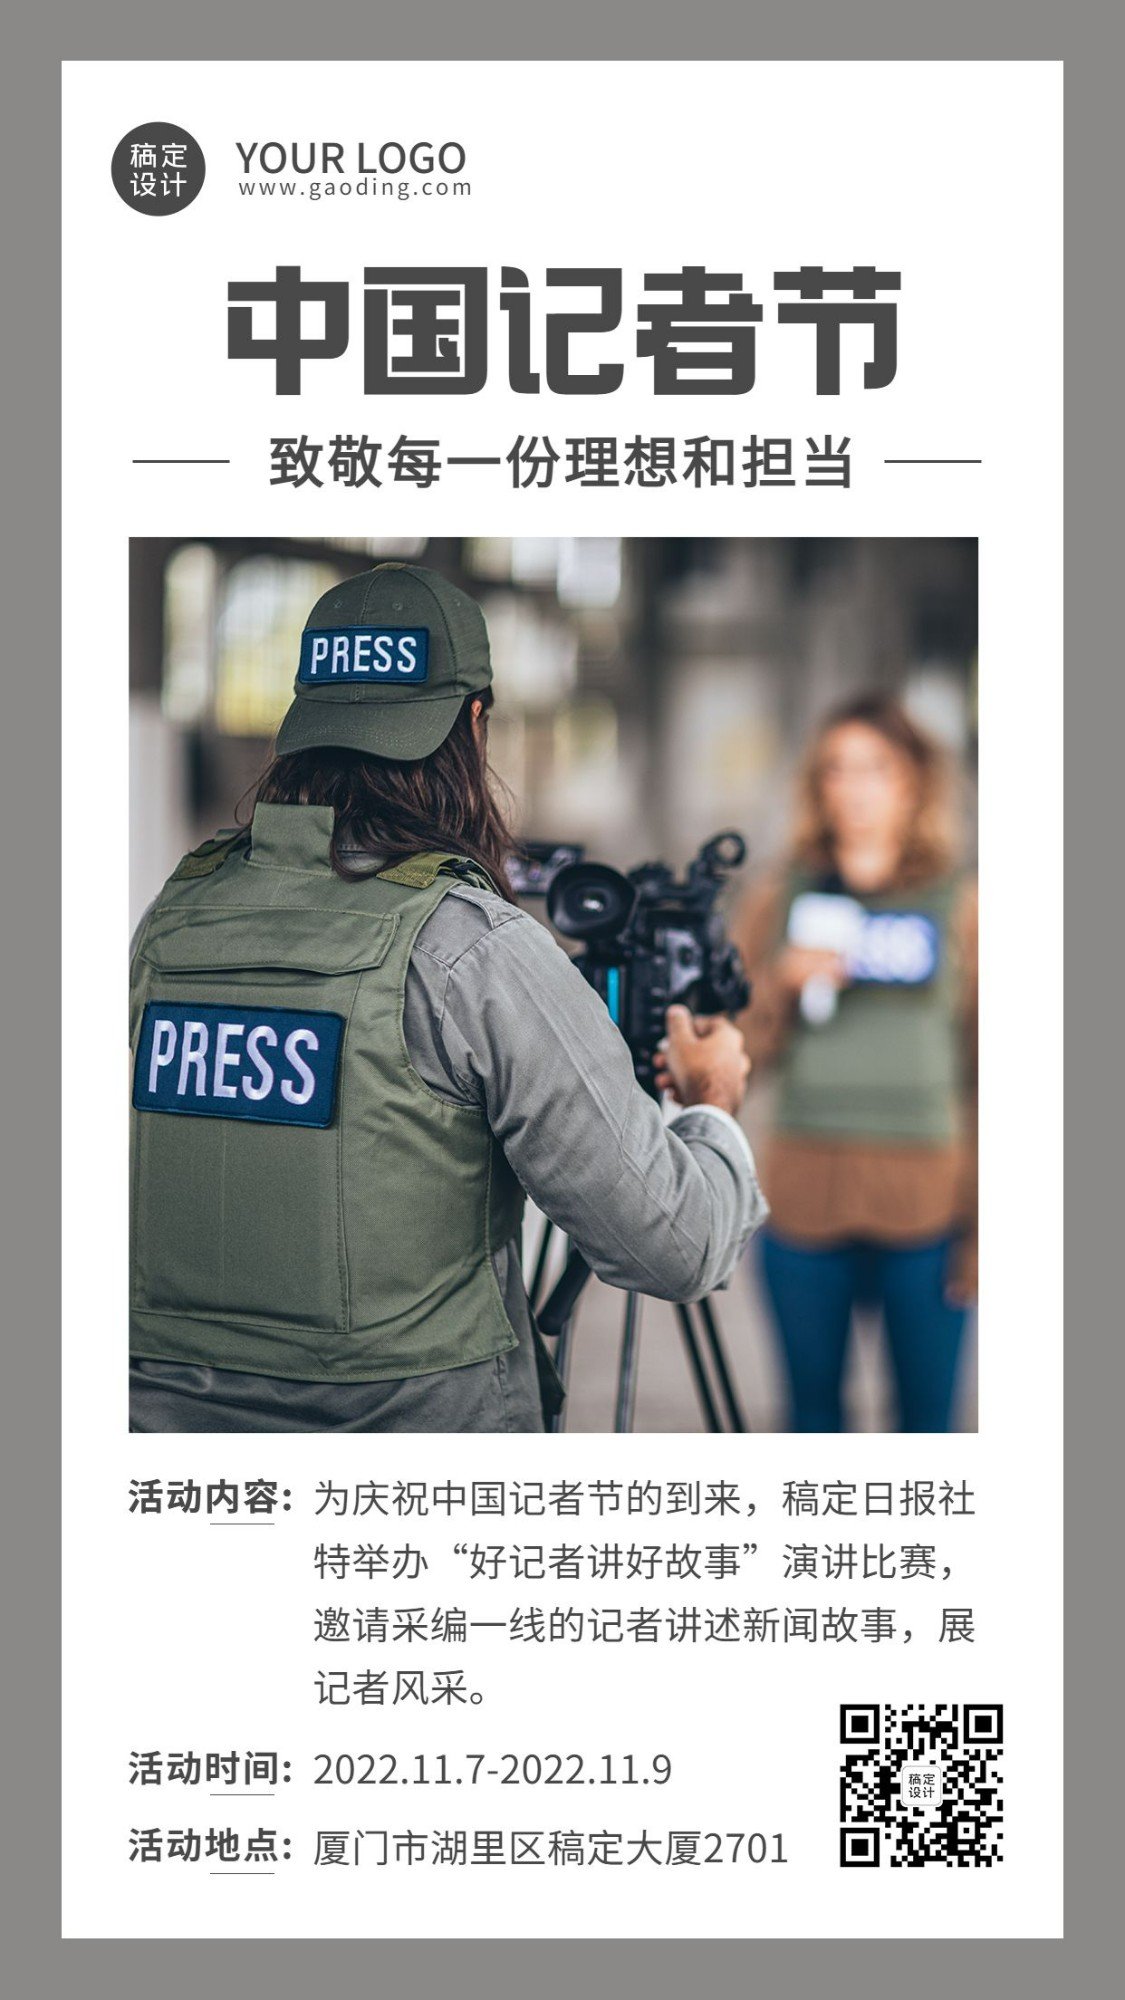 中国记者节节日活动实景手机海报